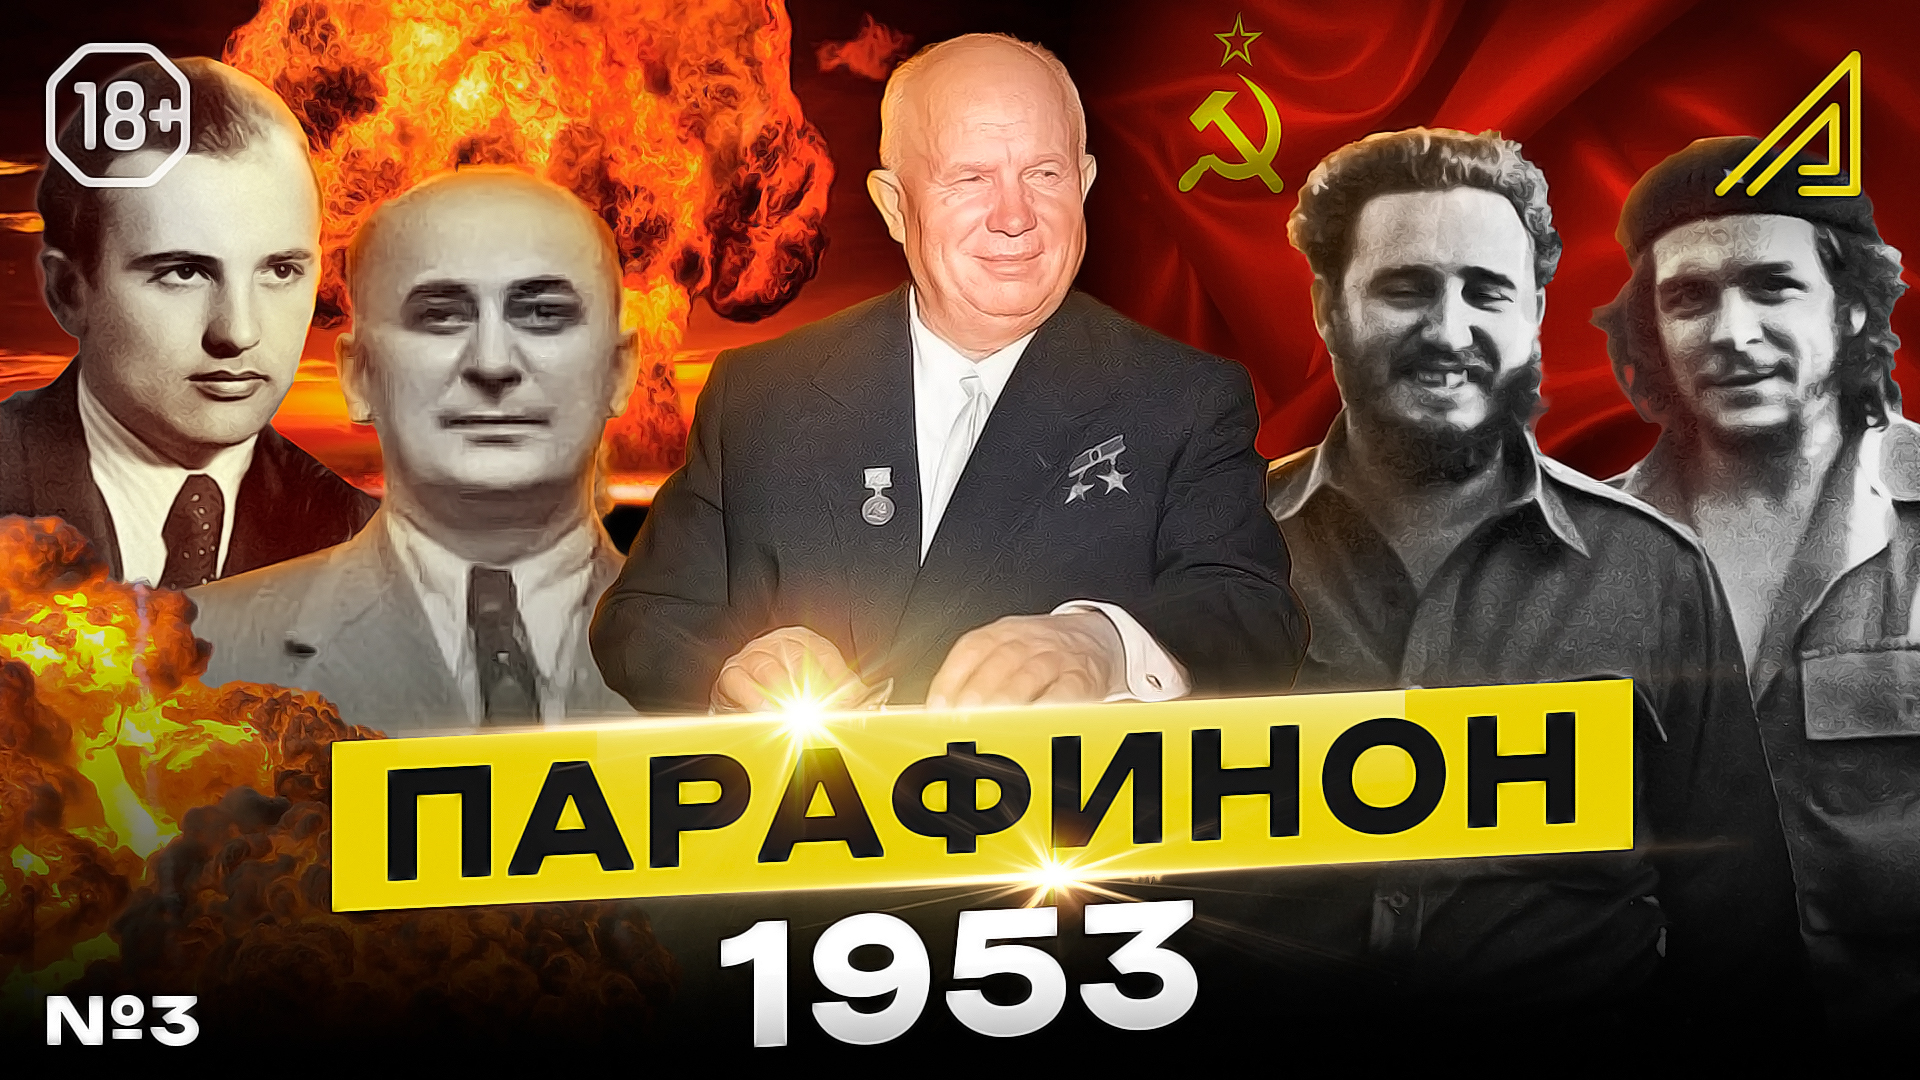 Парафинон #3: Как Хрущёв начал СССР разваливать, а Кастро Кубу освобождал. сентябрь-декабрь 1953